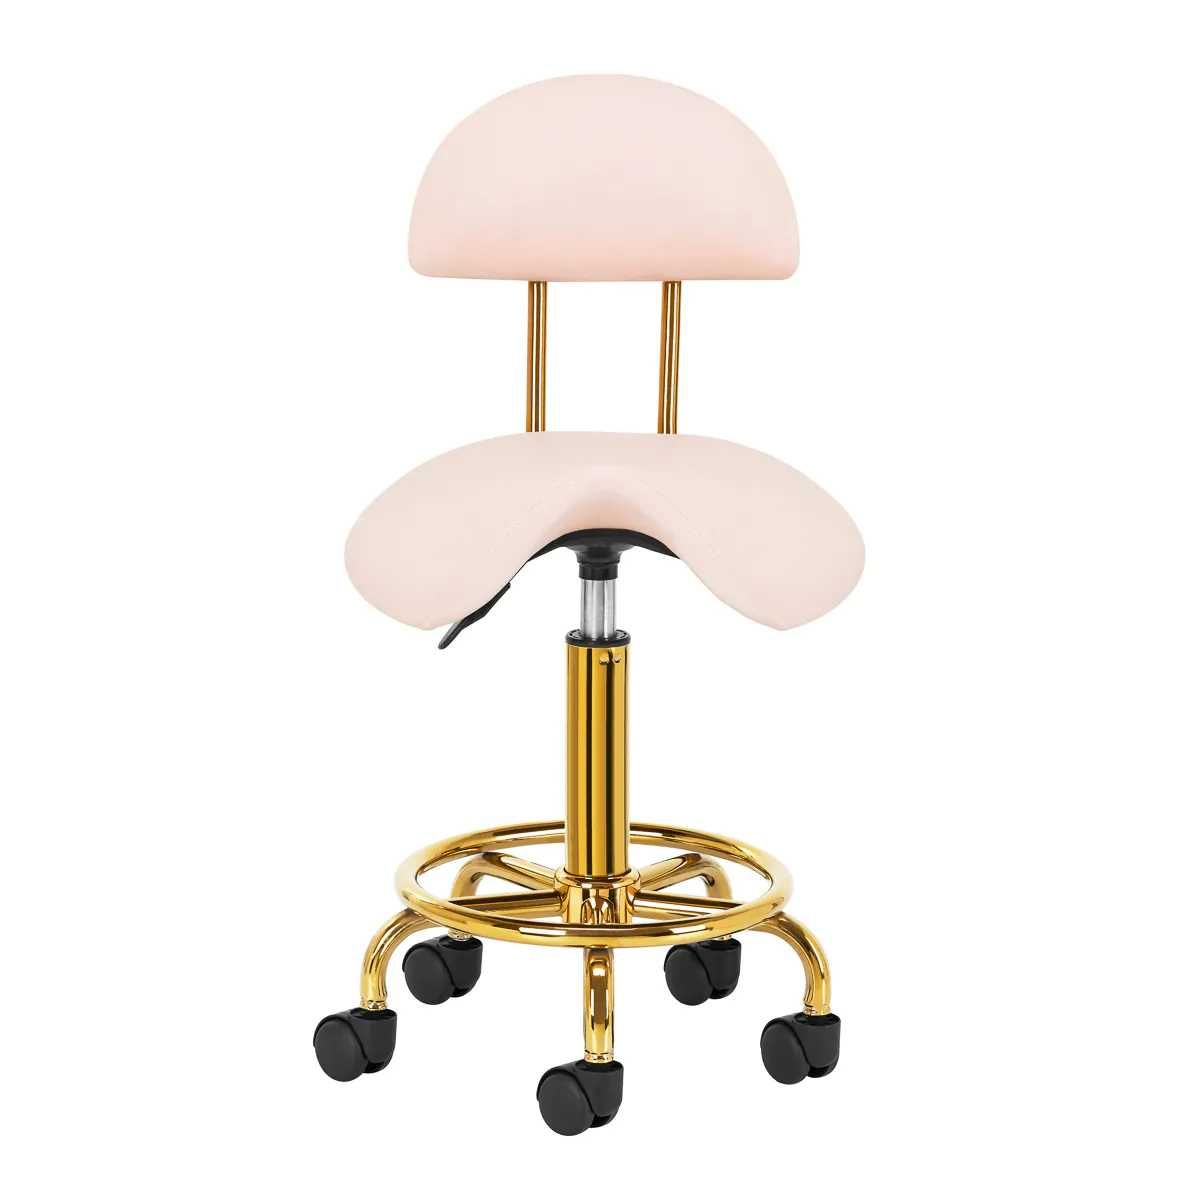 Козметичен стол-табуретка с облегалка 6001G 45/60 см-бяла/розова/черна